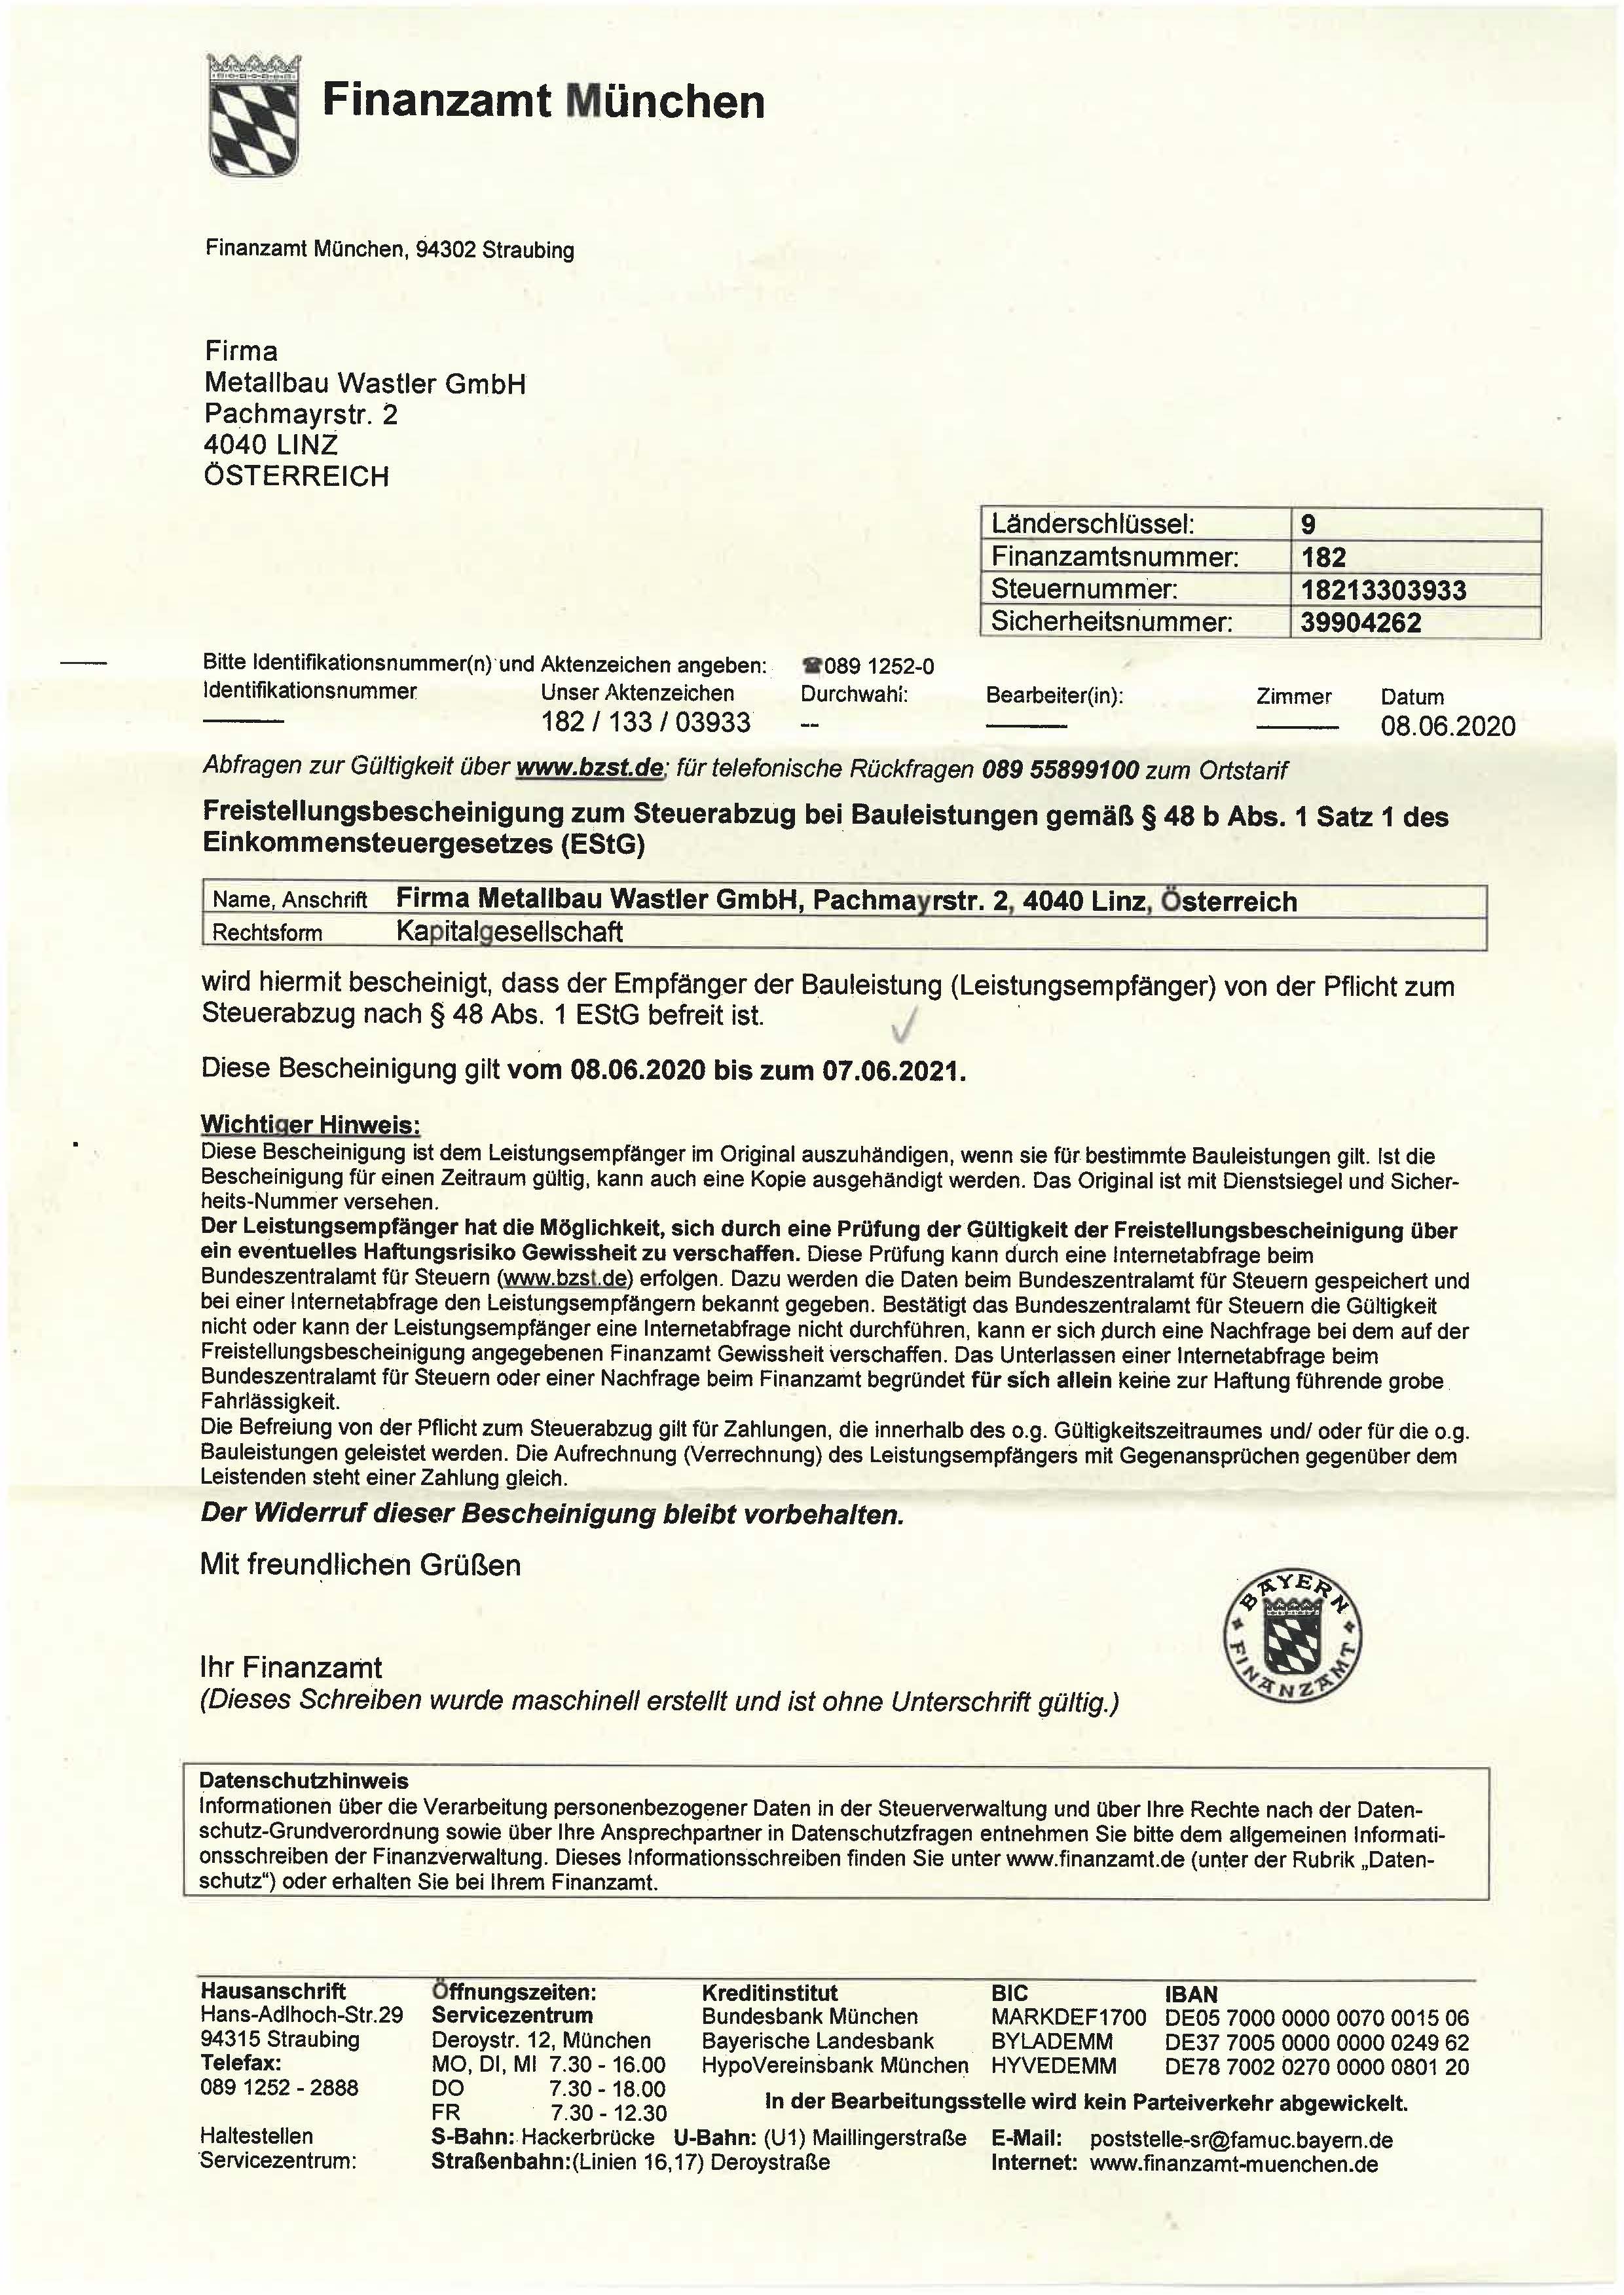 Freistellungsbescheinigung der Metallbau Wastler GmbH §48b gültig bis 07.06